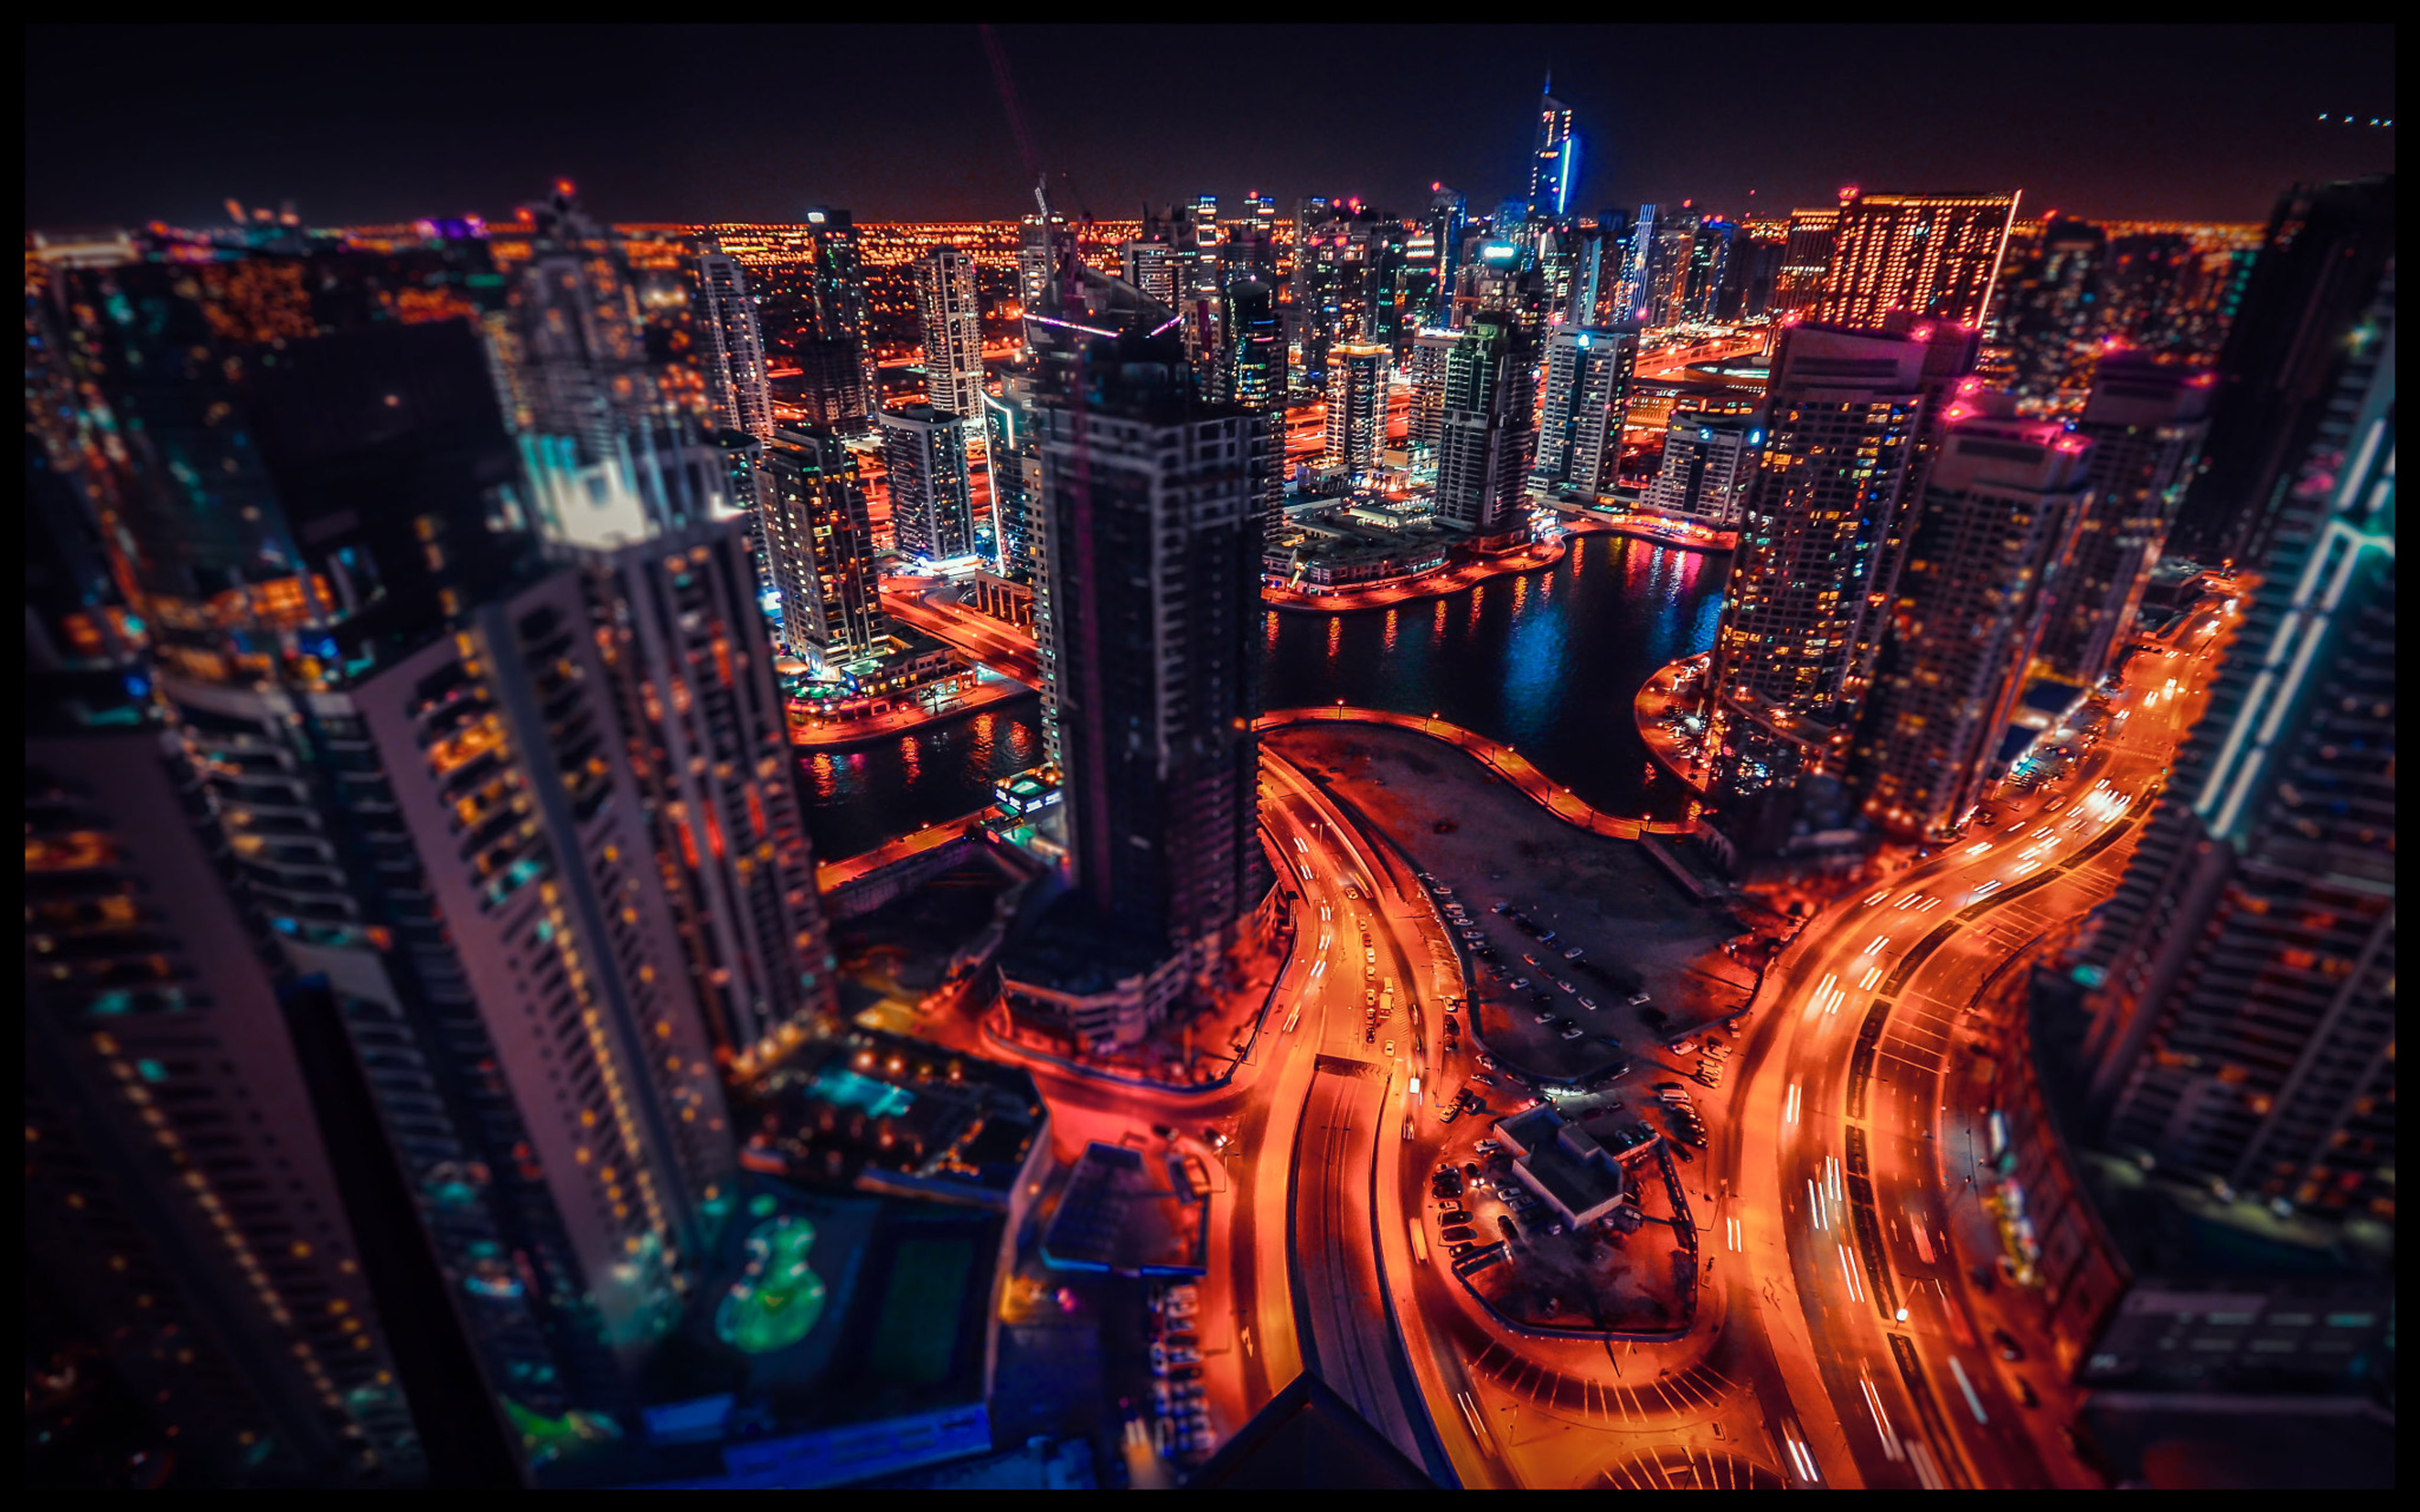 Dubailay đêm với những tòa nhà lung linh ánh đèn và những khu vực giải trí sầm uất là một trong những điểm đến yêu thích của nhiều du khách. Nếu bạn chưa từng đến Dubailay đêm, hãy chiêm ngưỡng qua hình ảnh đẹp mắt và tình tứ này để có thêm động lực đến với điểm đến này. 